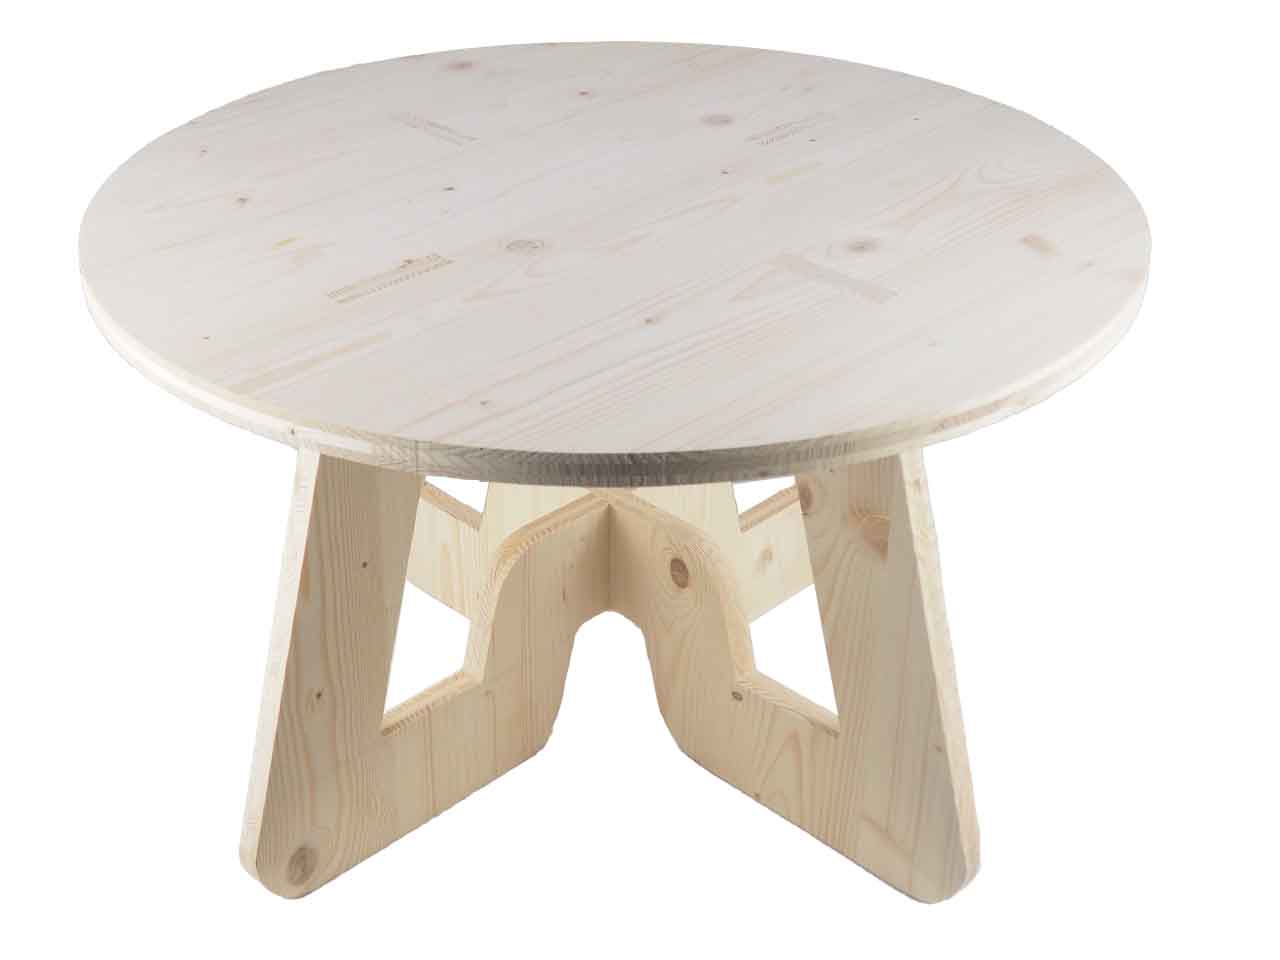 Petite table basse de salon en bois brute vue de dessus